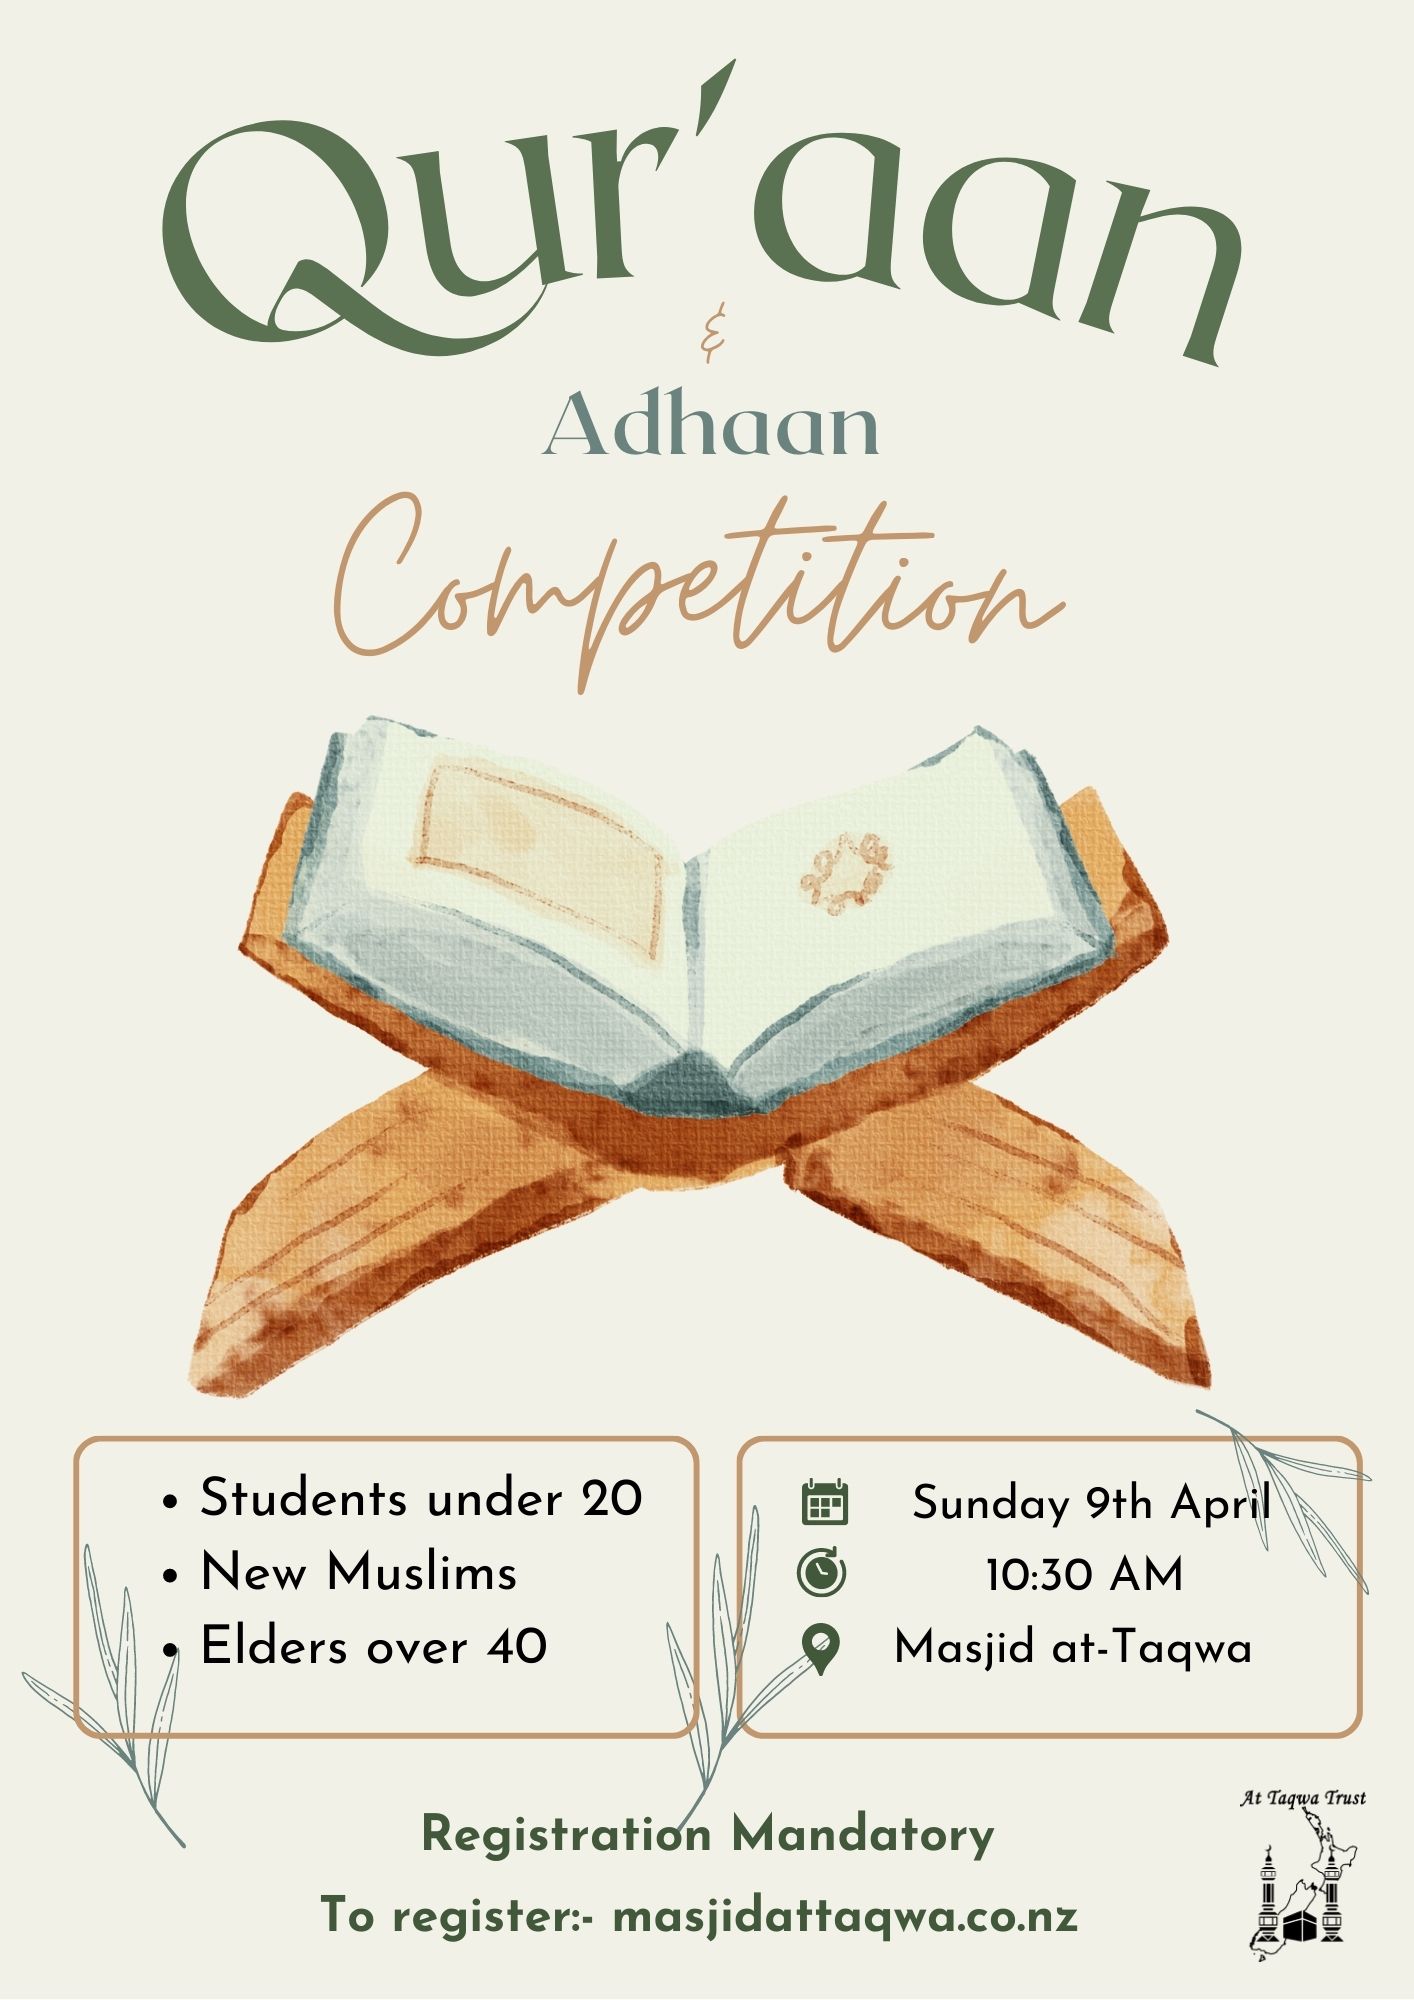 Qur'aan & Adhaan Competition